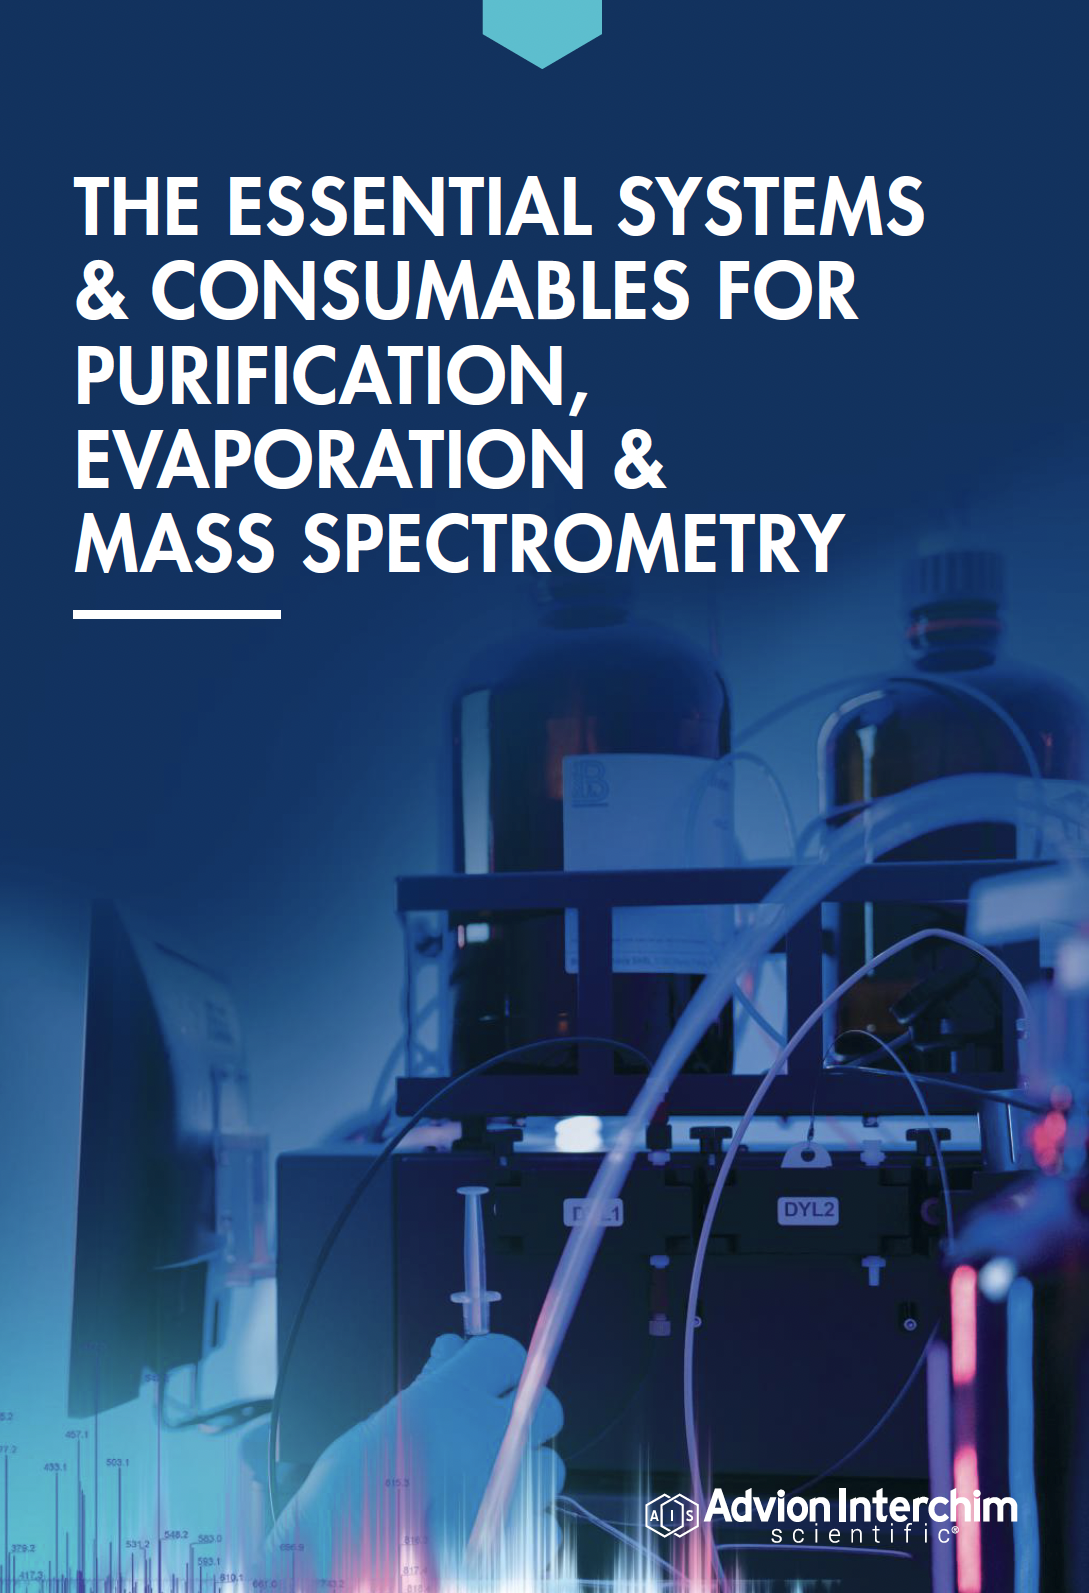 Los sistemas y consumibles esenciales para la purificación, la evaporación y la espectrometría de masas